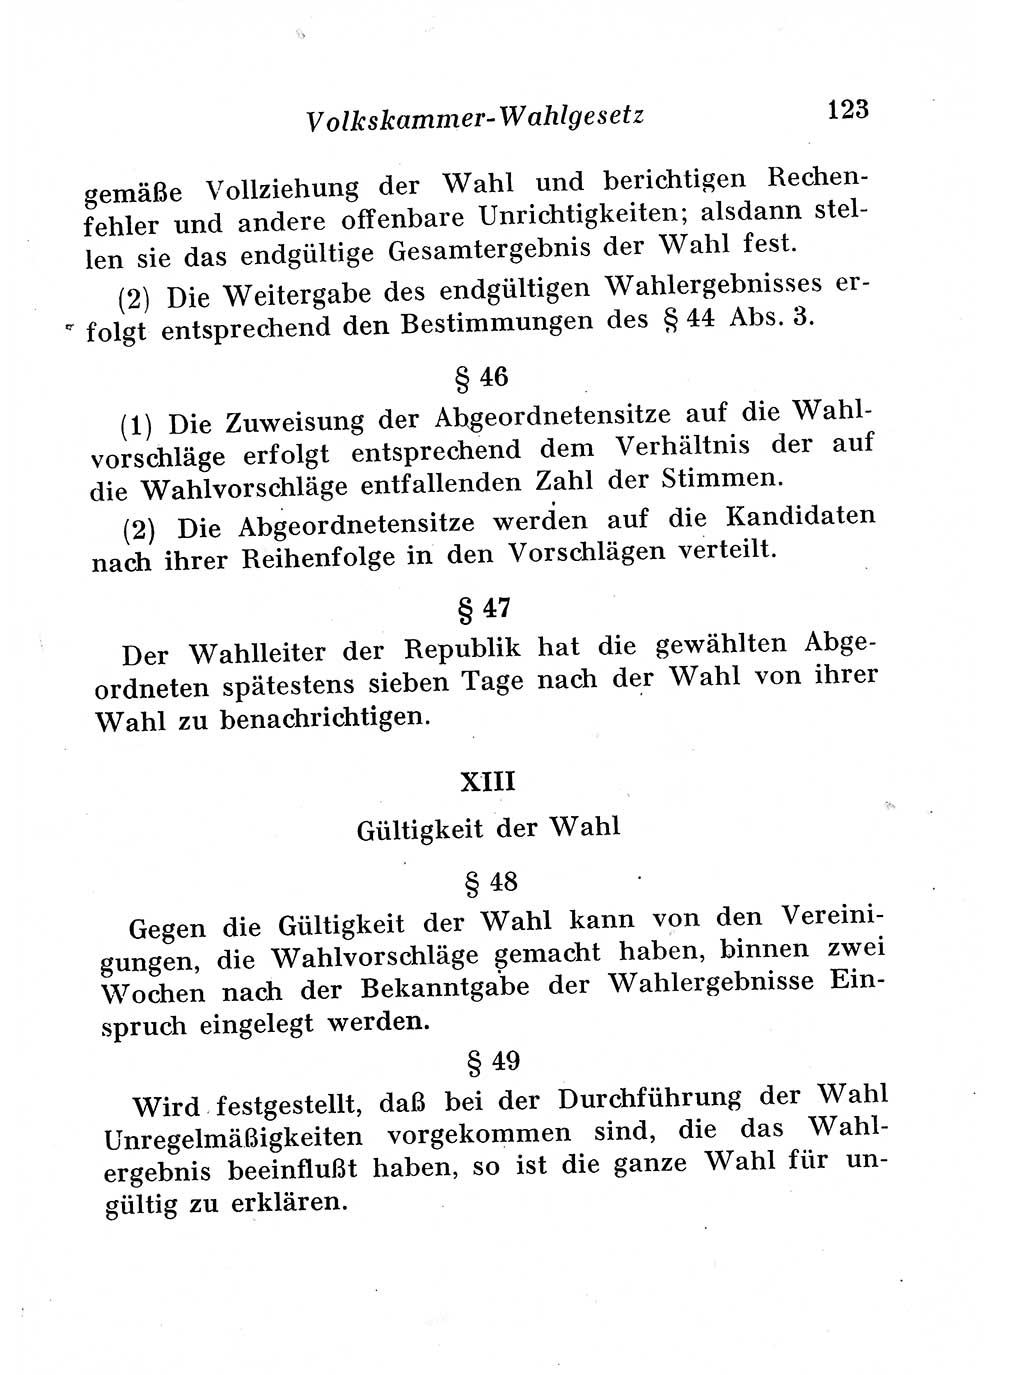 Staats- und verwaltungsrechtliche Gesetze der Deutschen Demokratischen Republik (DDR) 1958, Seite 123 (StVerwR Ges. DDR 1958, S. 123)